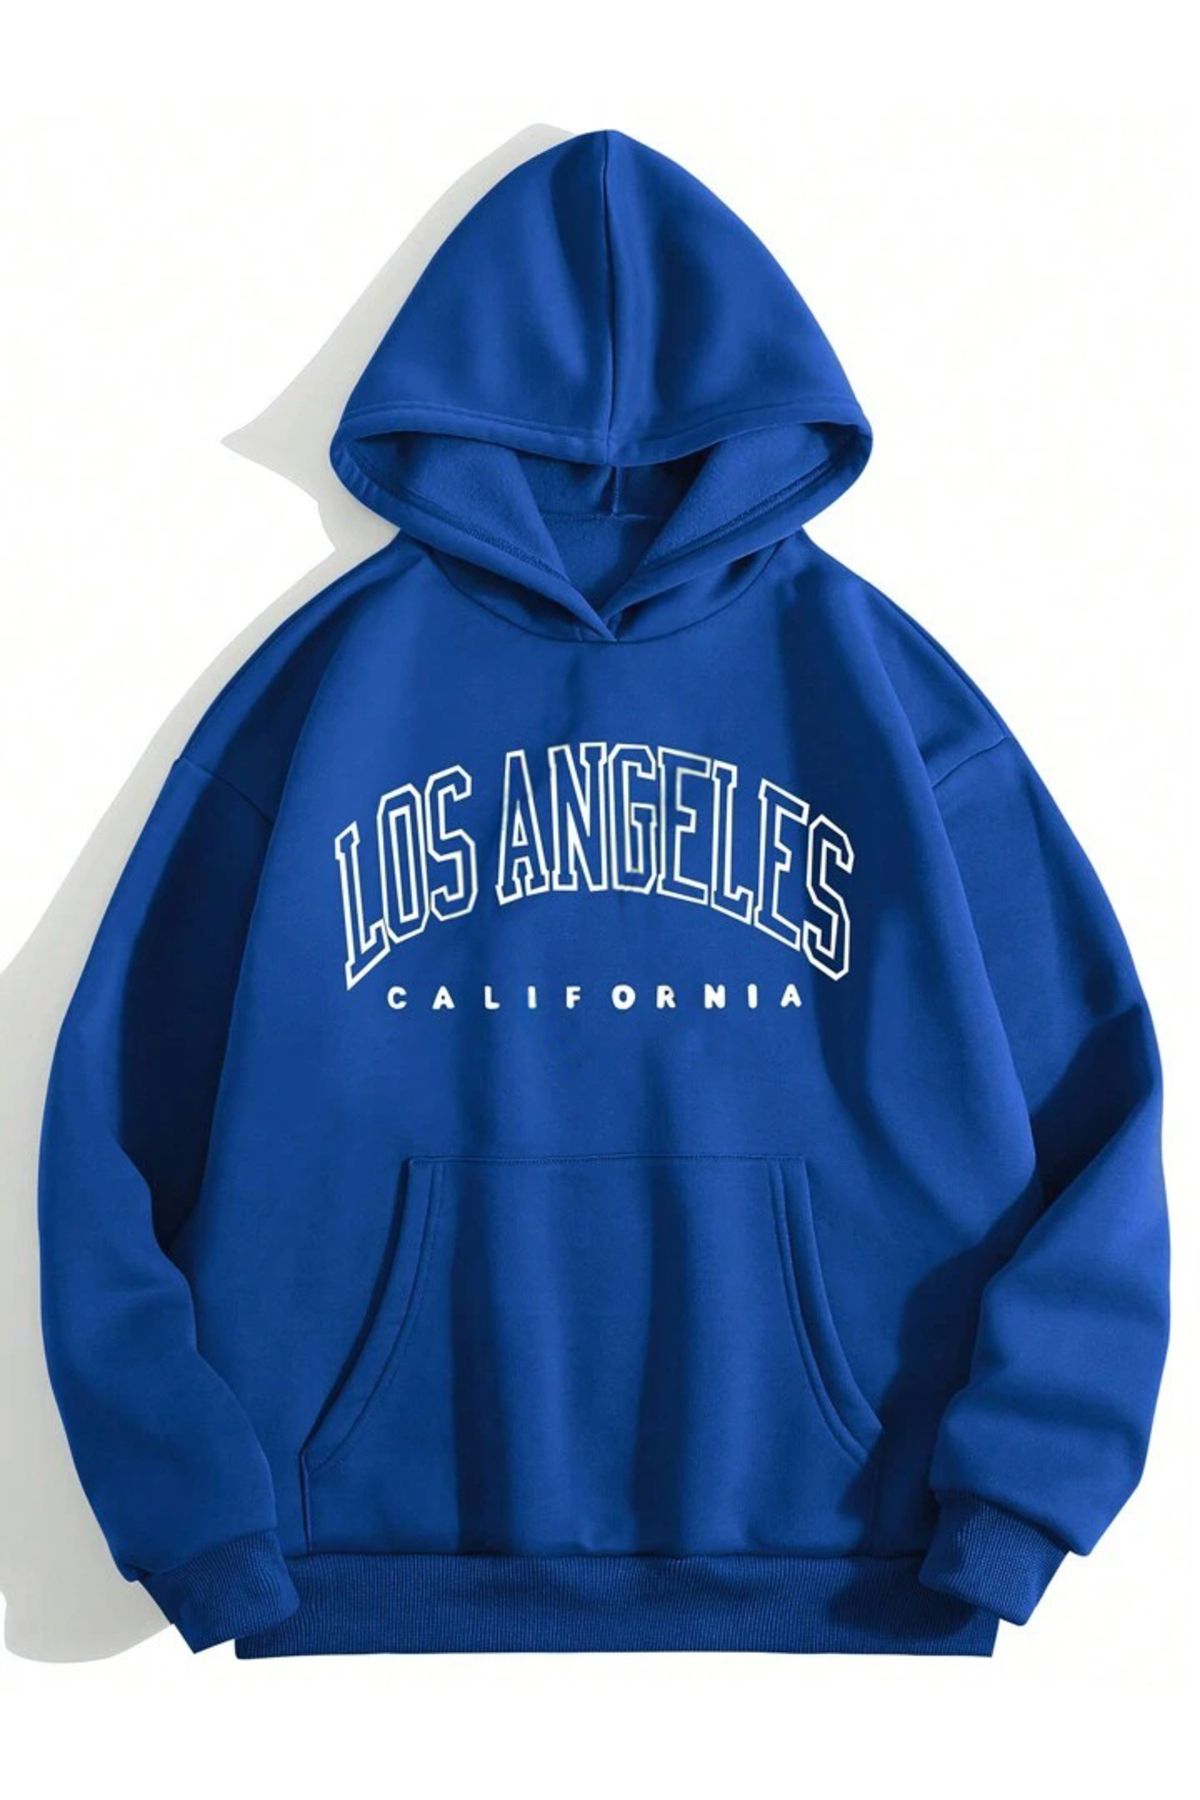 DUBU BUTİK Los Angeles California Sweatshirt - Sax Mavi Baskılı Oversize Kapüşonlu